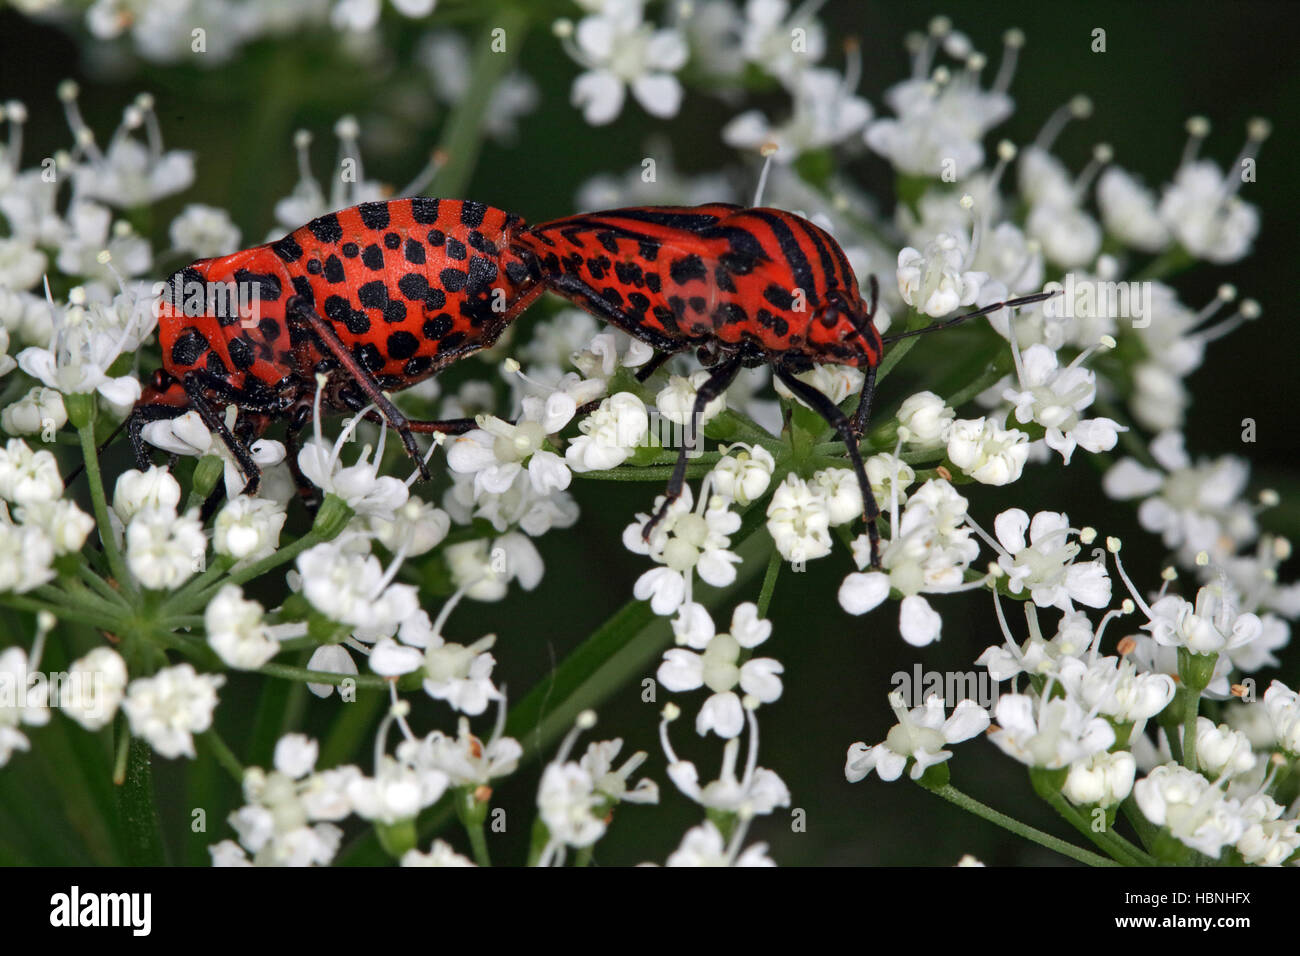 Streifenwanze, minstrel bug Stock Photo